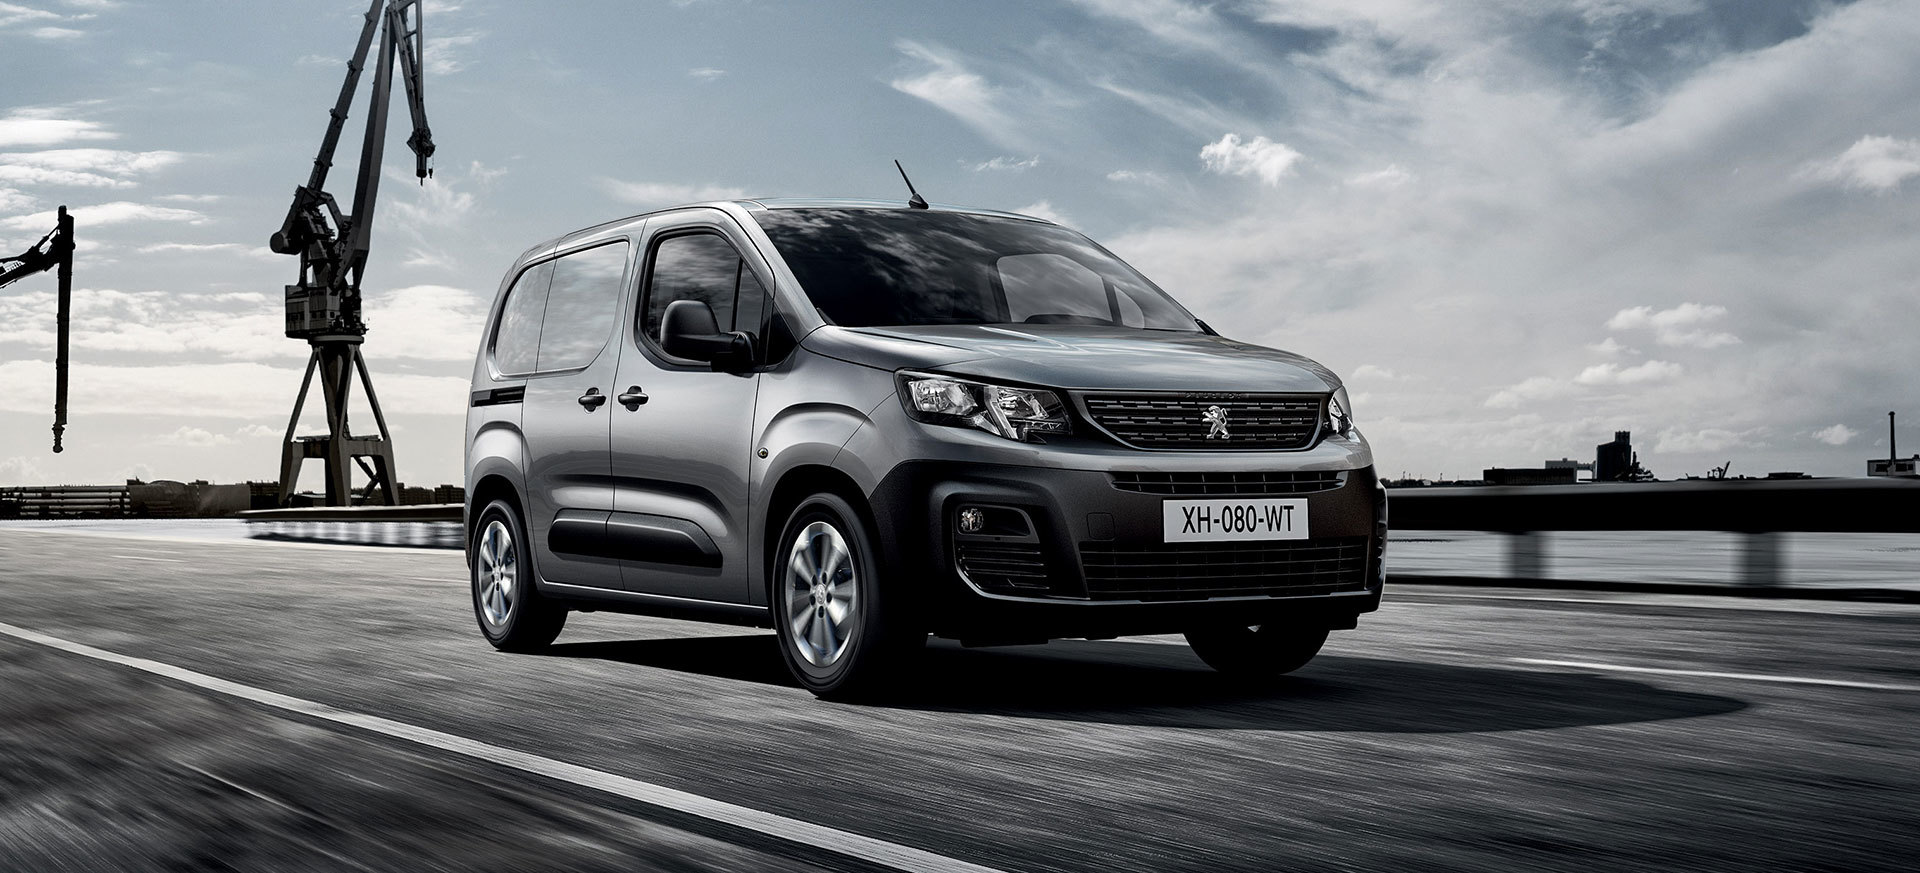 Llega la nueva generación de la Opel Combo, Citroën Berlingo y Peugeot Partner